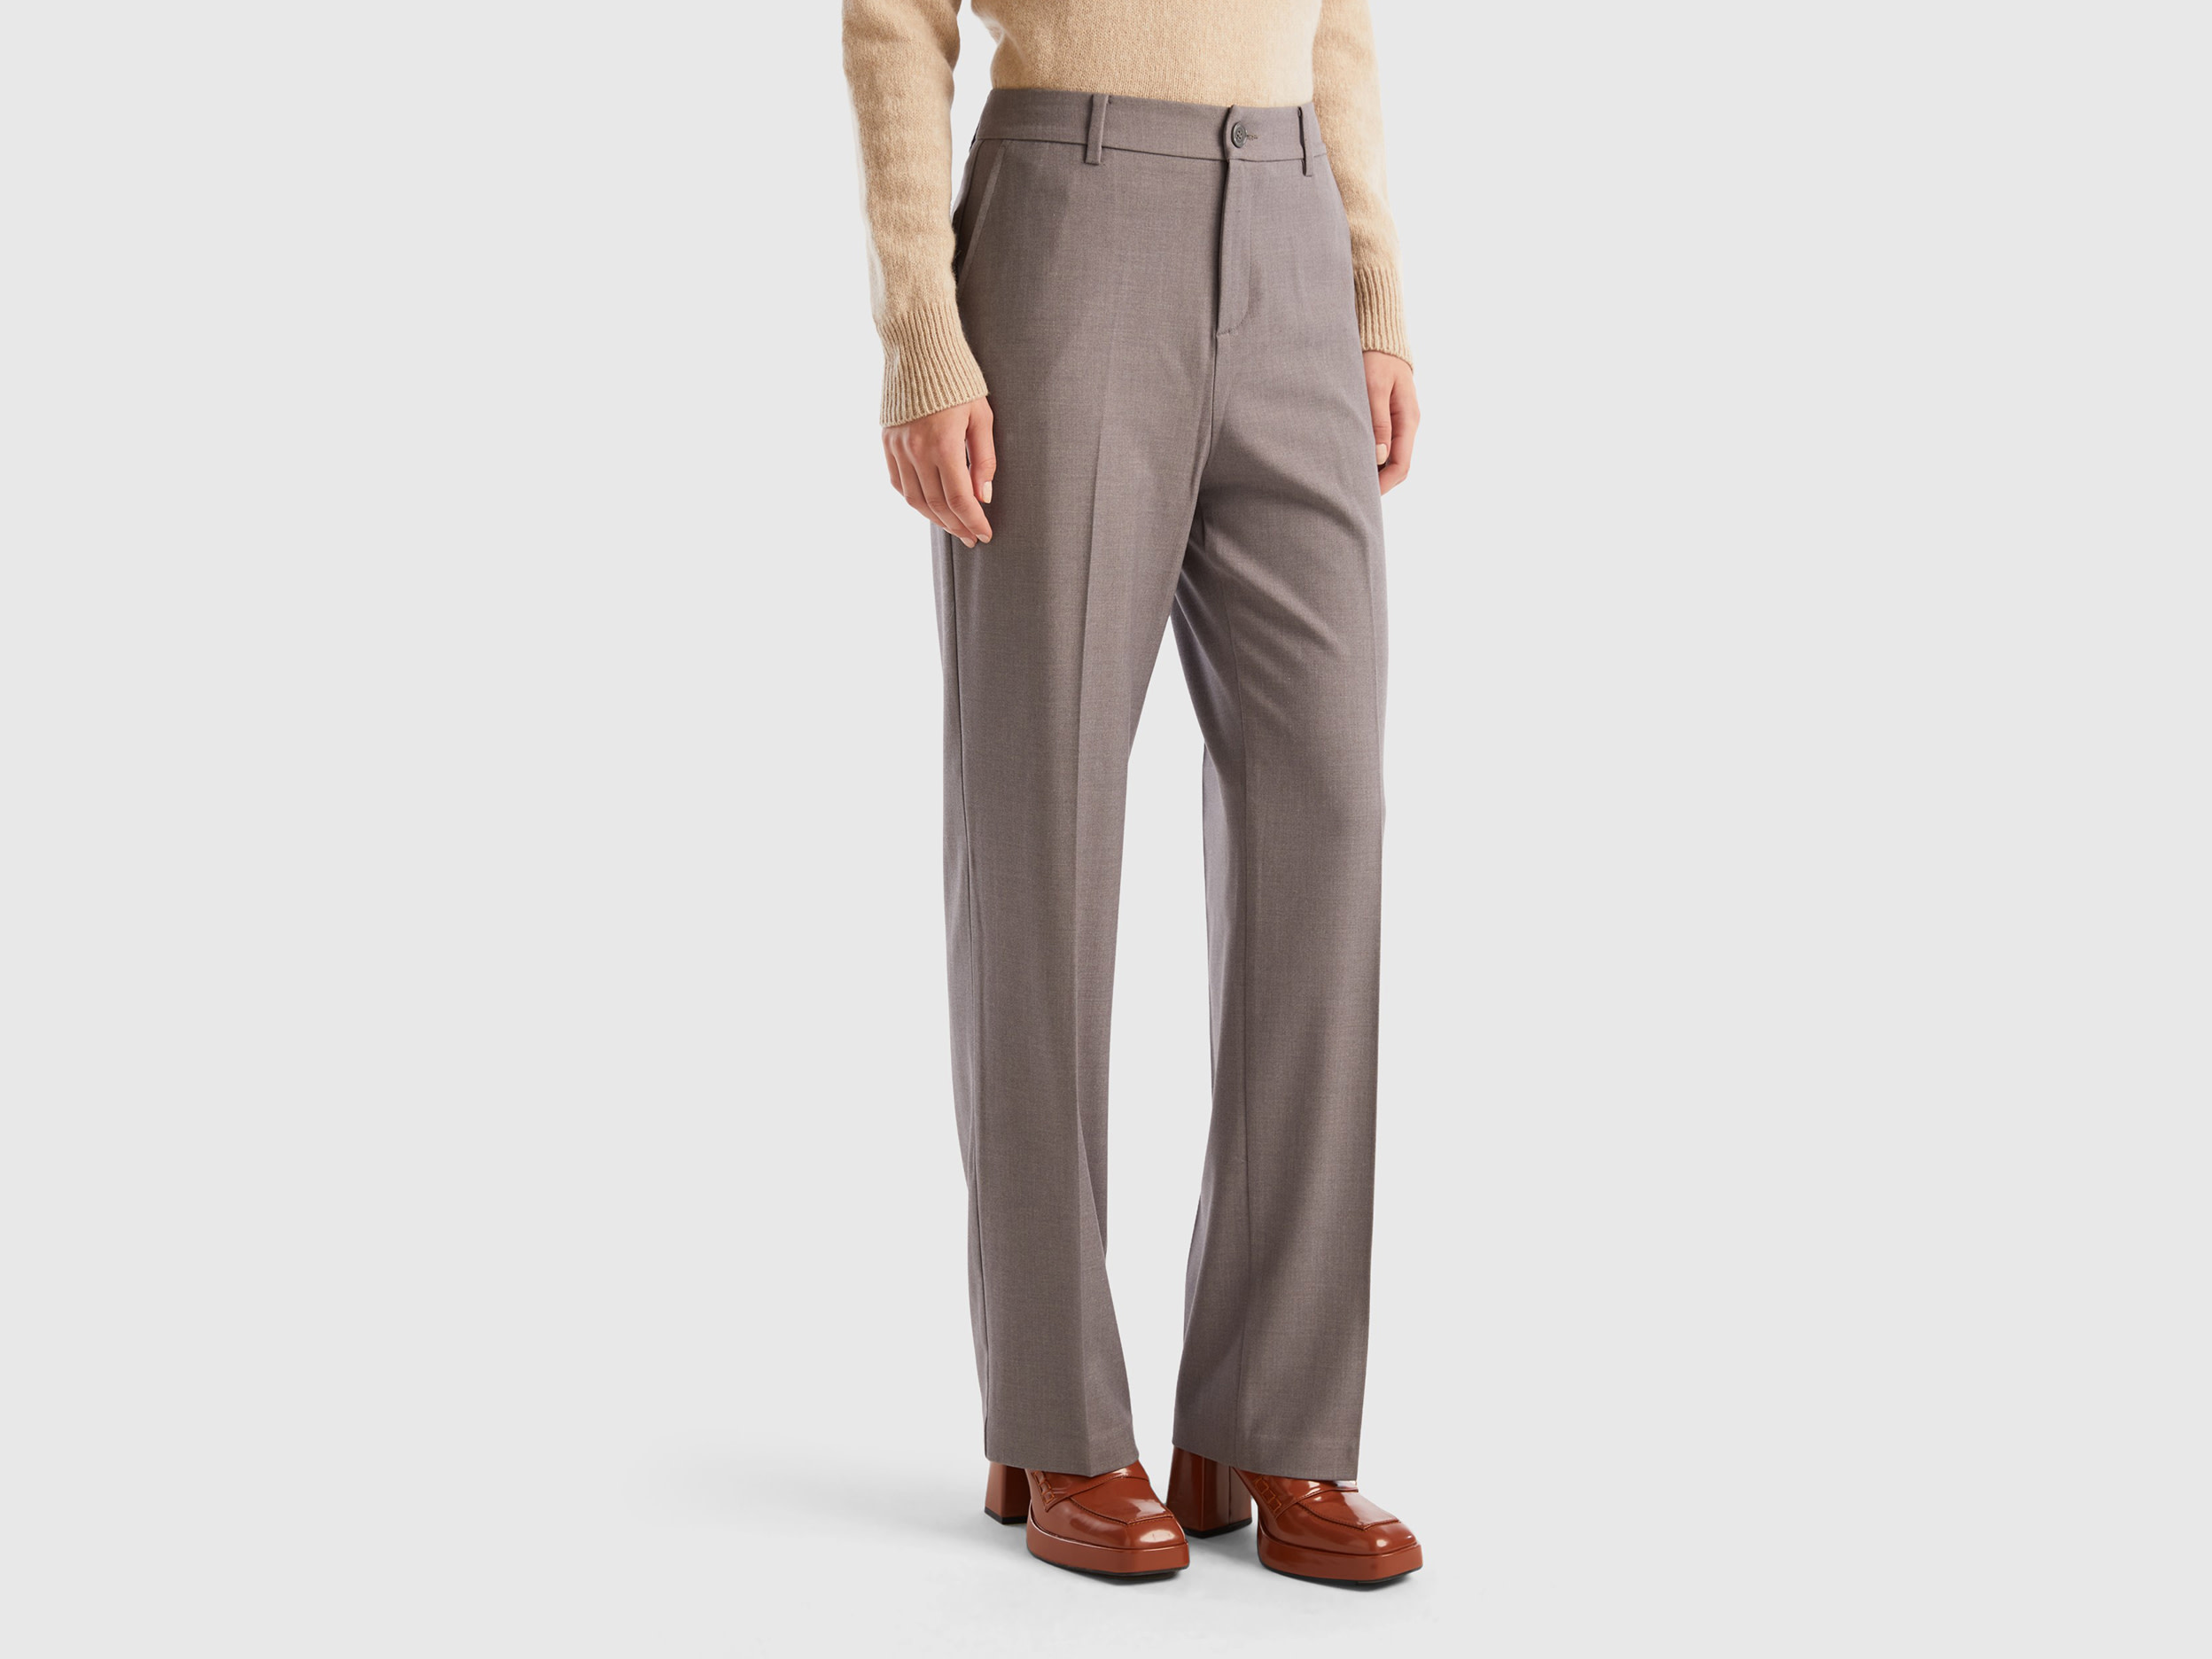 Benetton, Warm Flannel Trousers, size 14, Gray, Women